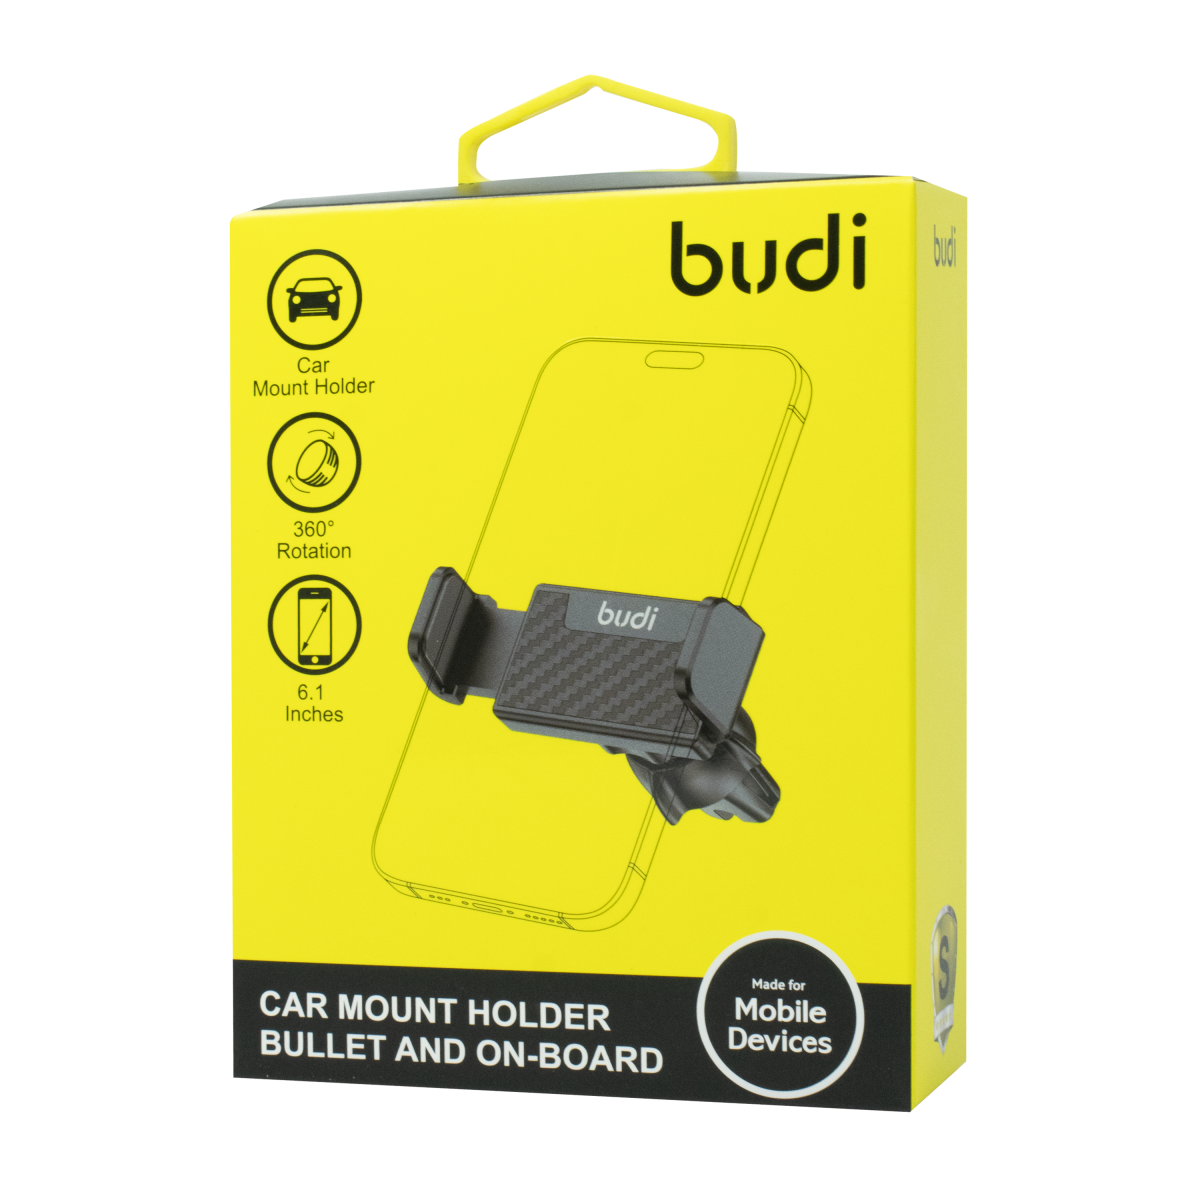 CM539B -Budi car mount holder bullet and on-board